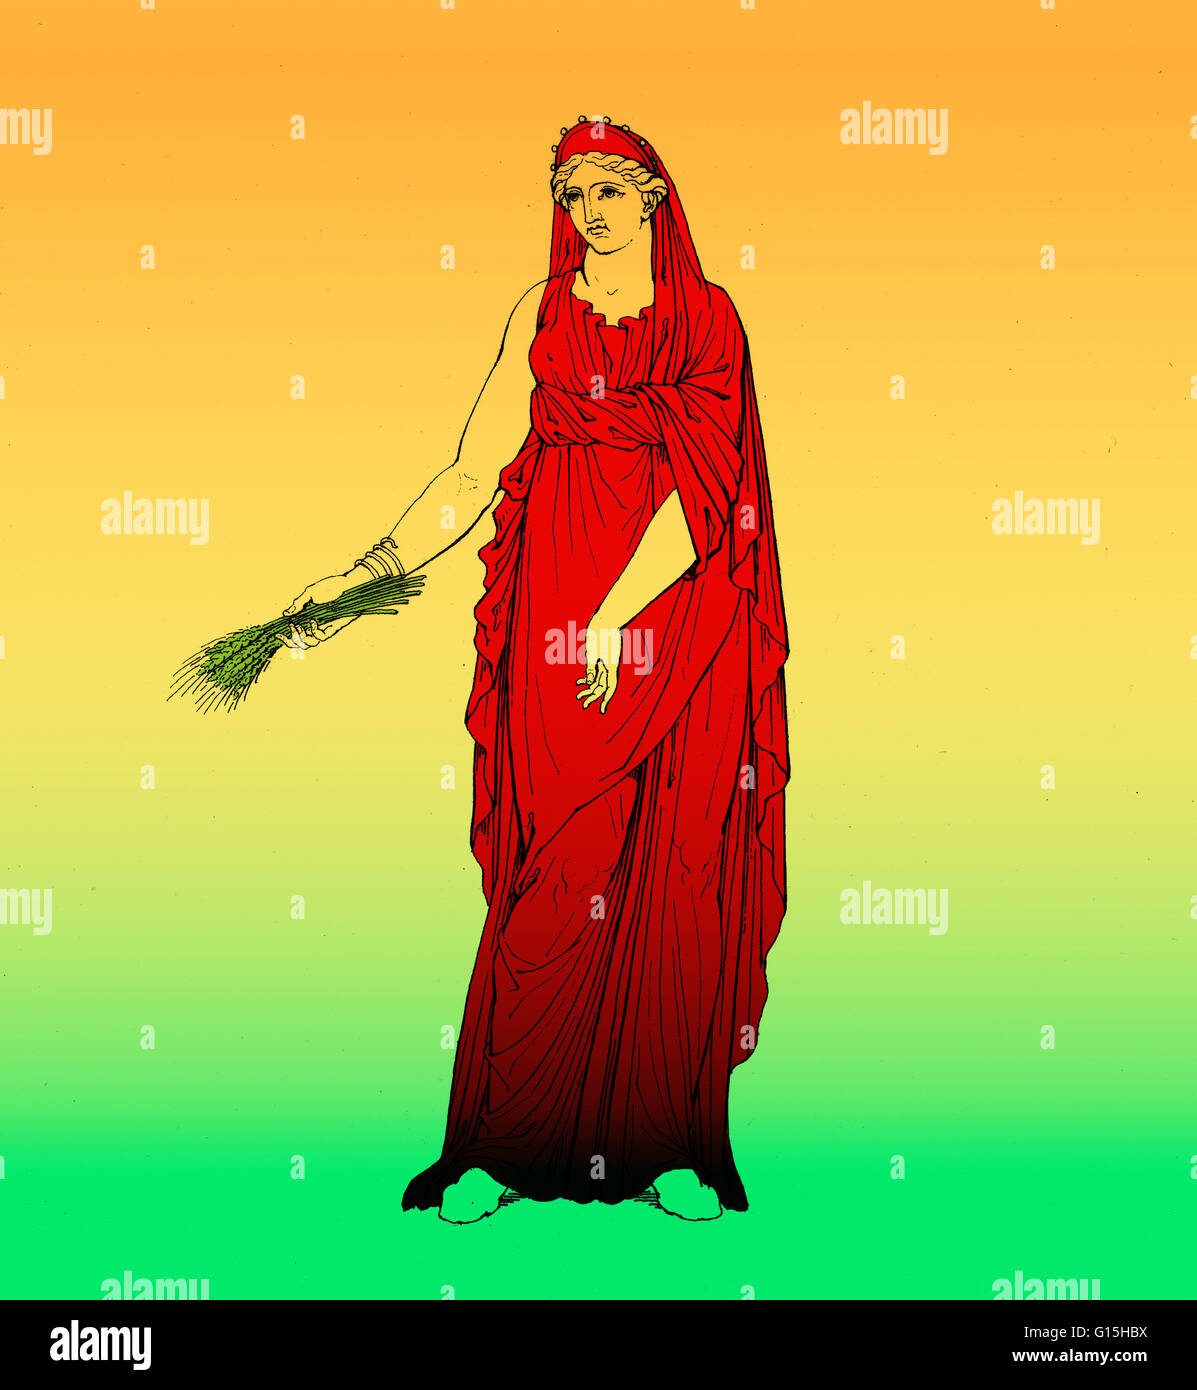 Ceres, una diosa de la antigua religión romana. Ella era conocida como la diosa de la agricultura, las cosechas de grano, la fecundidad y las relaciones materno. Foto de stock